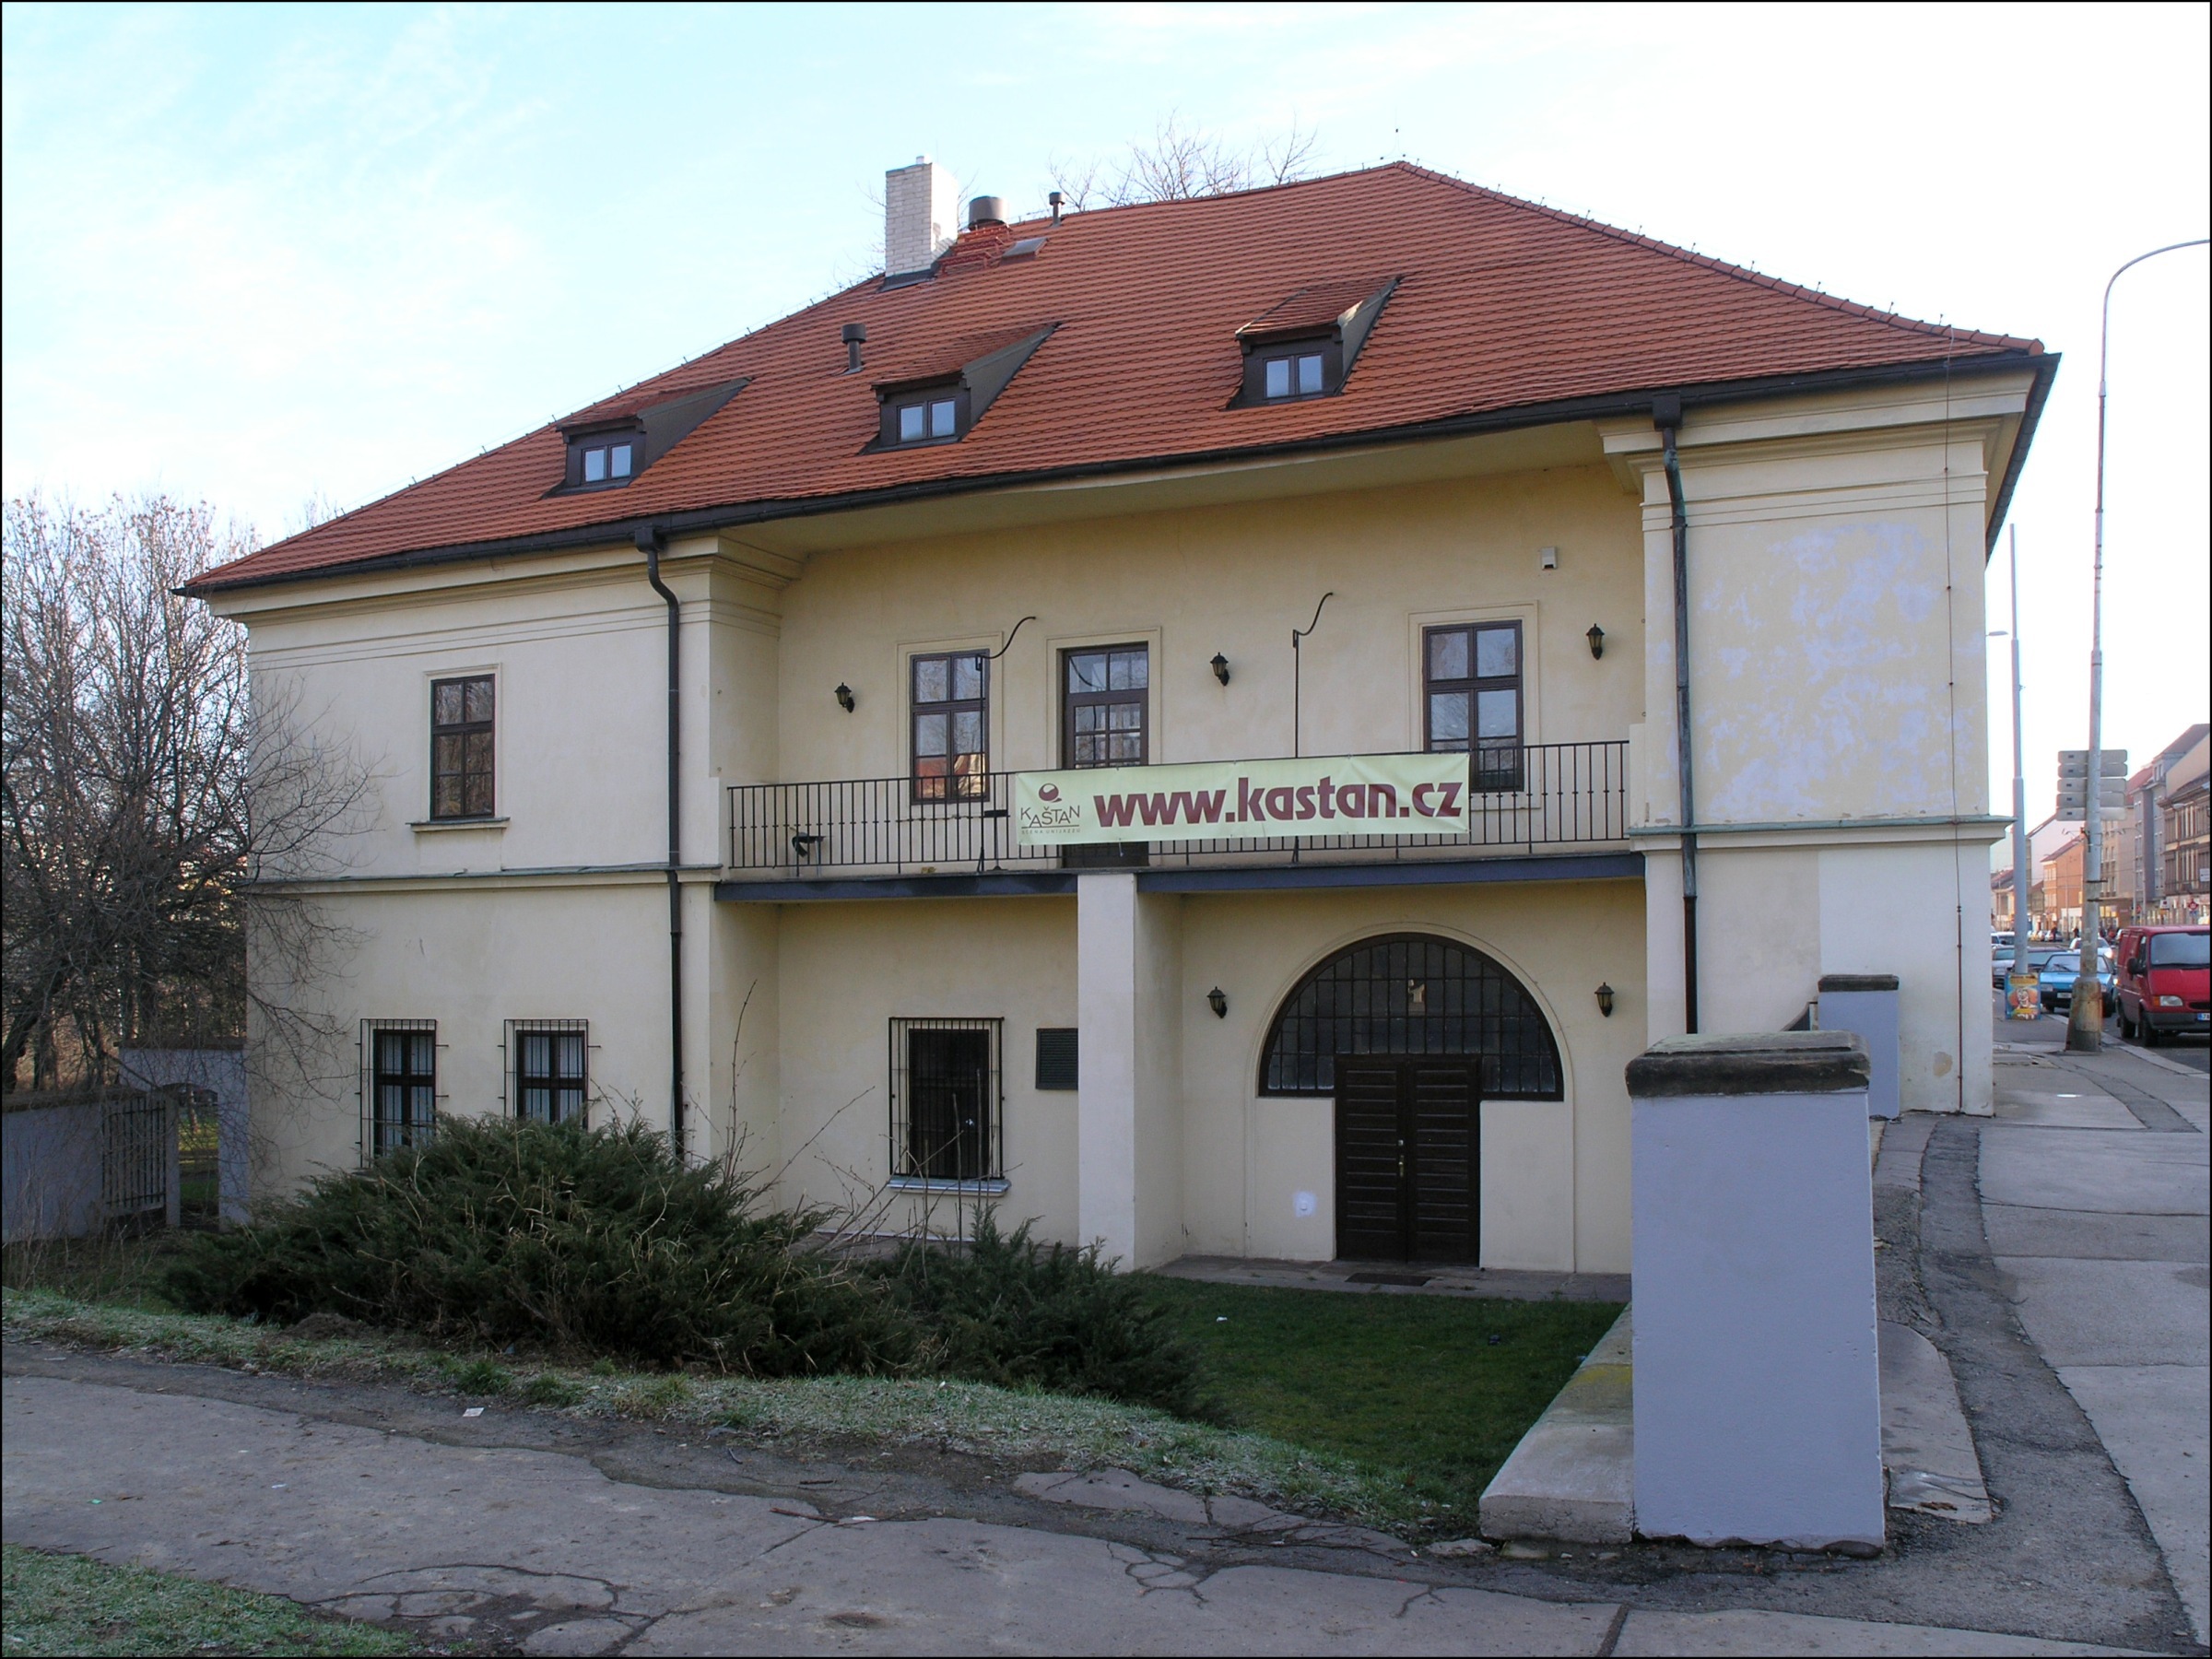 Kulturní dům Kaštan v Praze 6, Břevnově